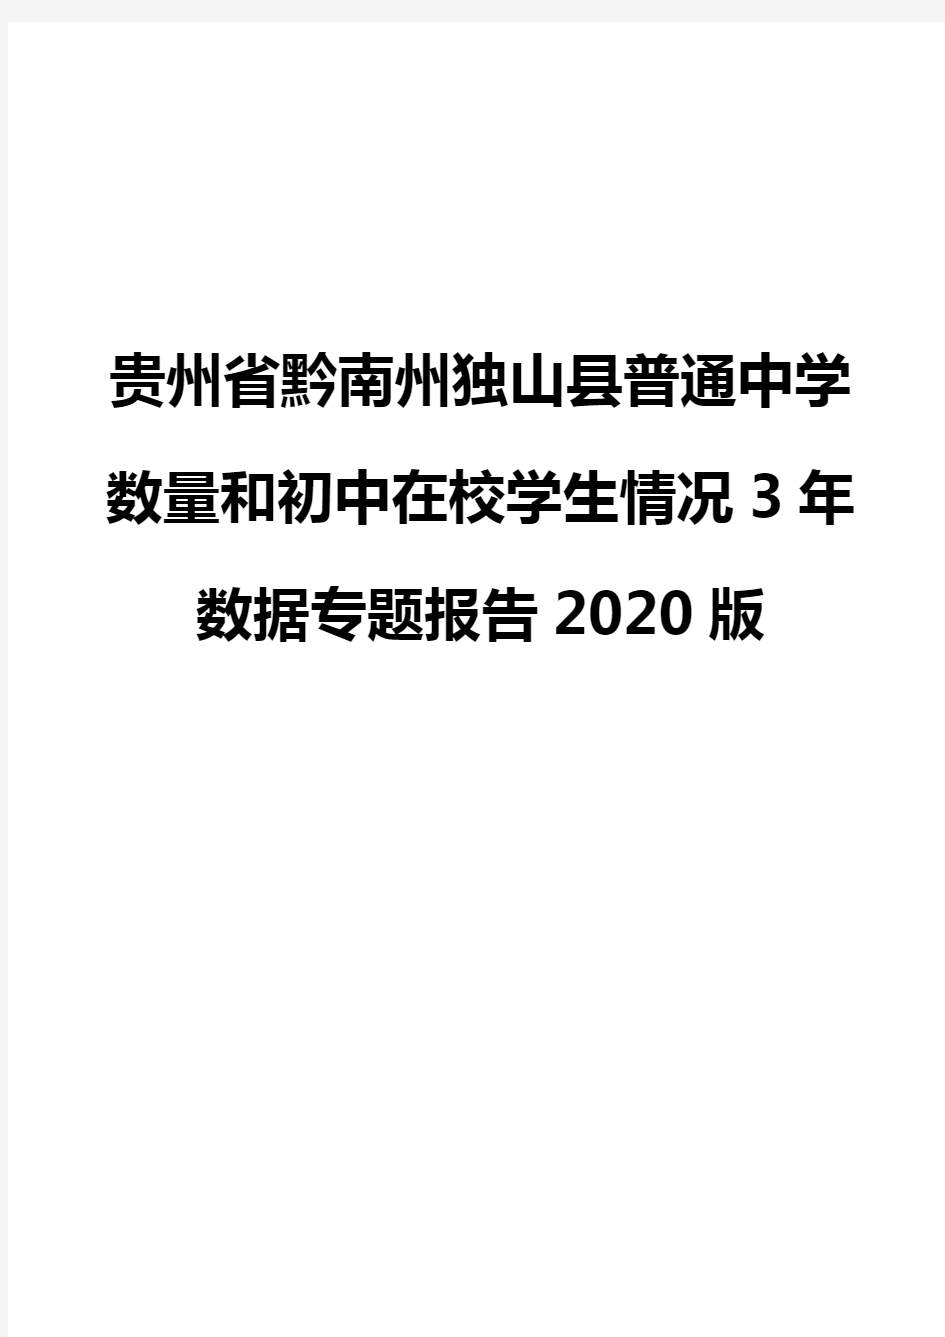 贵州省黔南州独山县普通中学数量和初中在校学生情况3年数据专题报告2020版